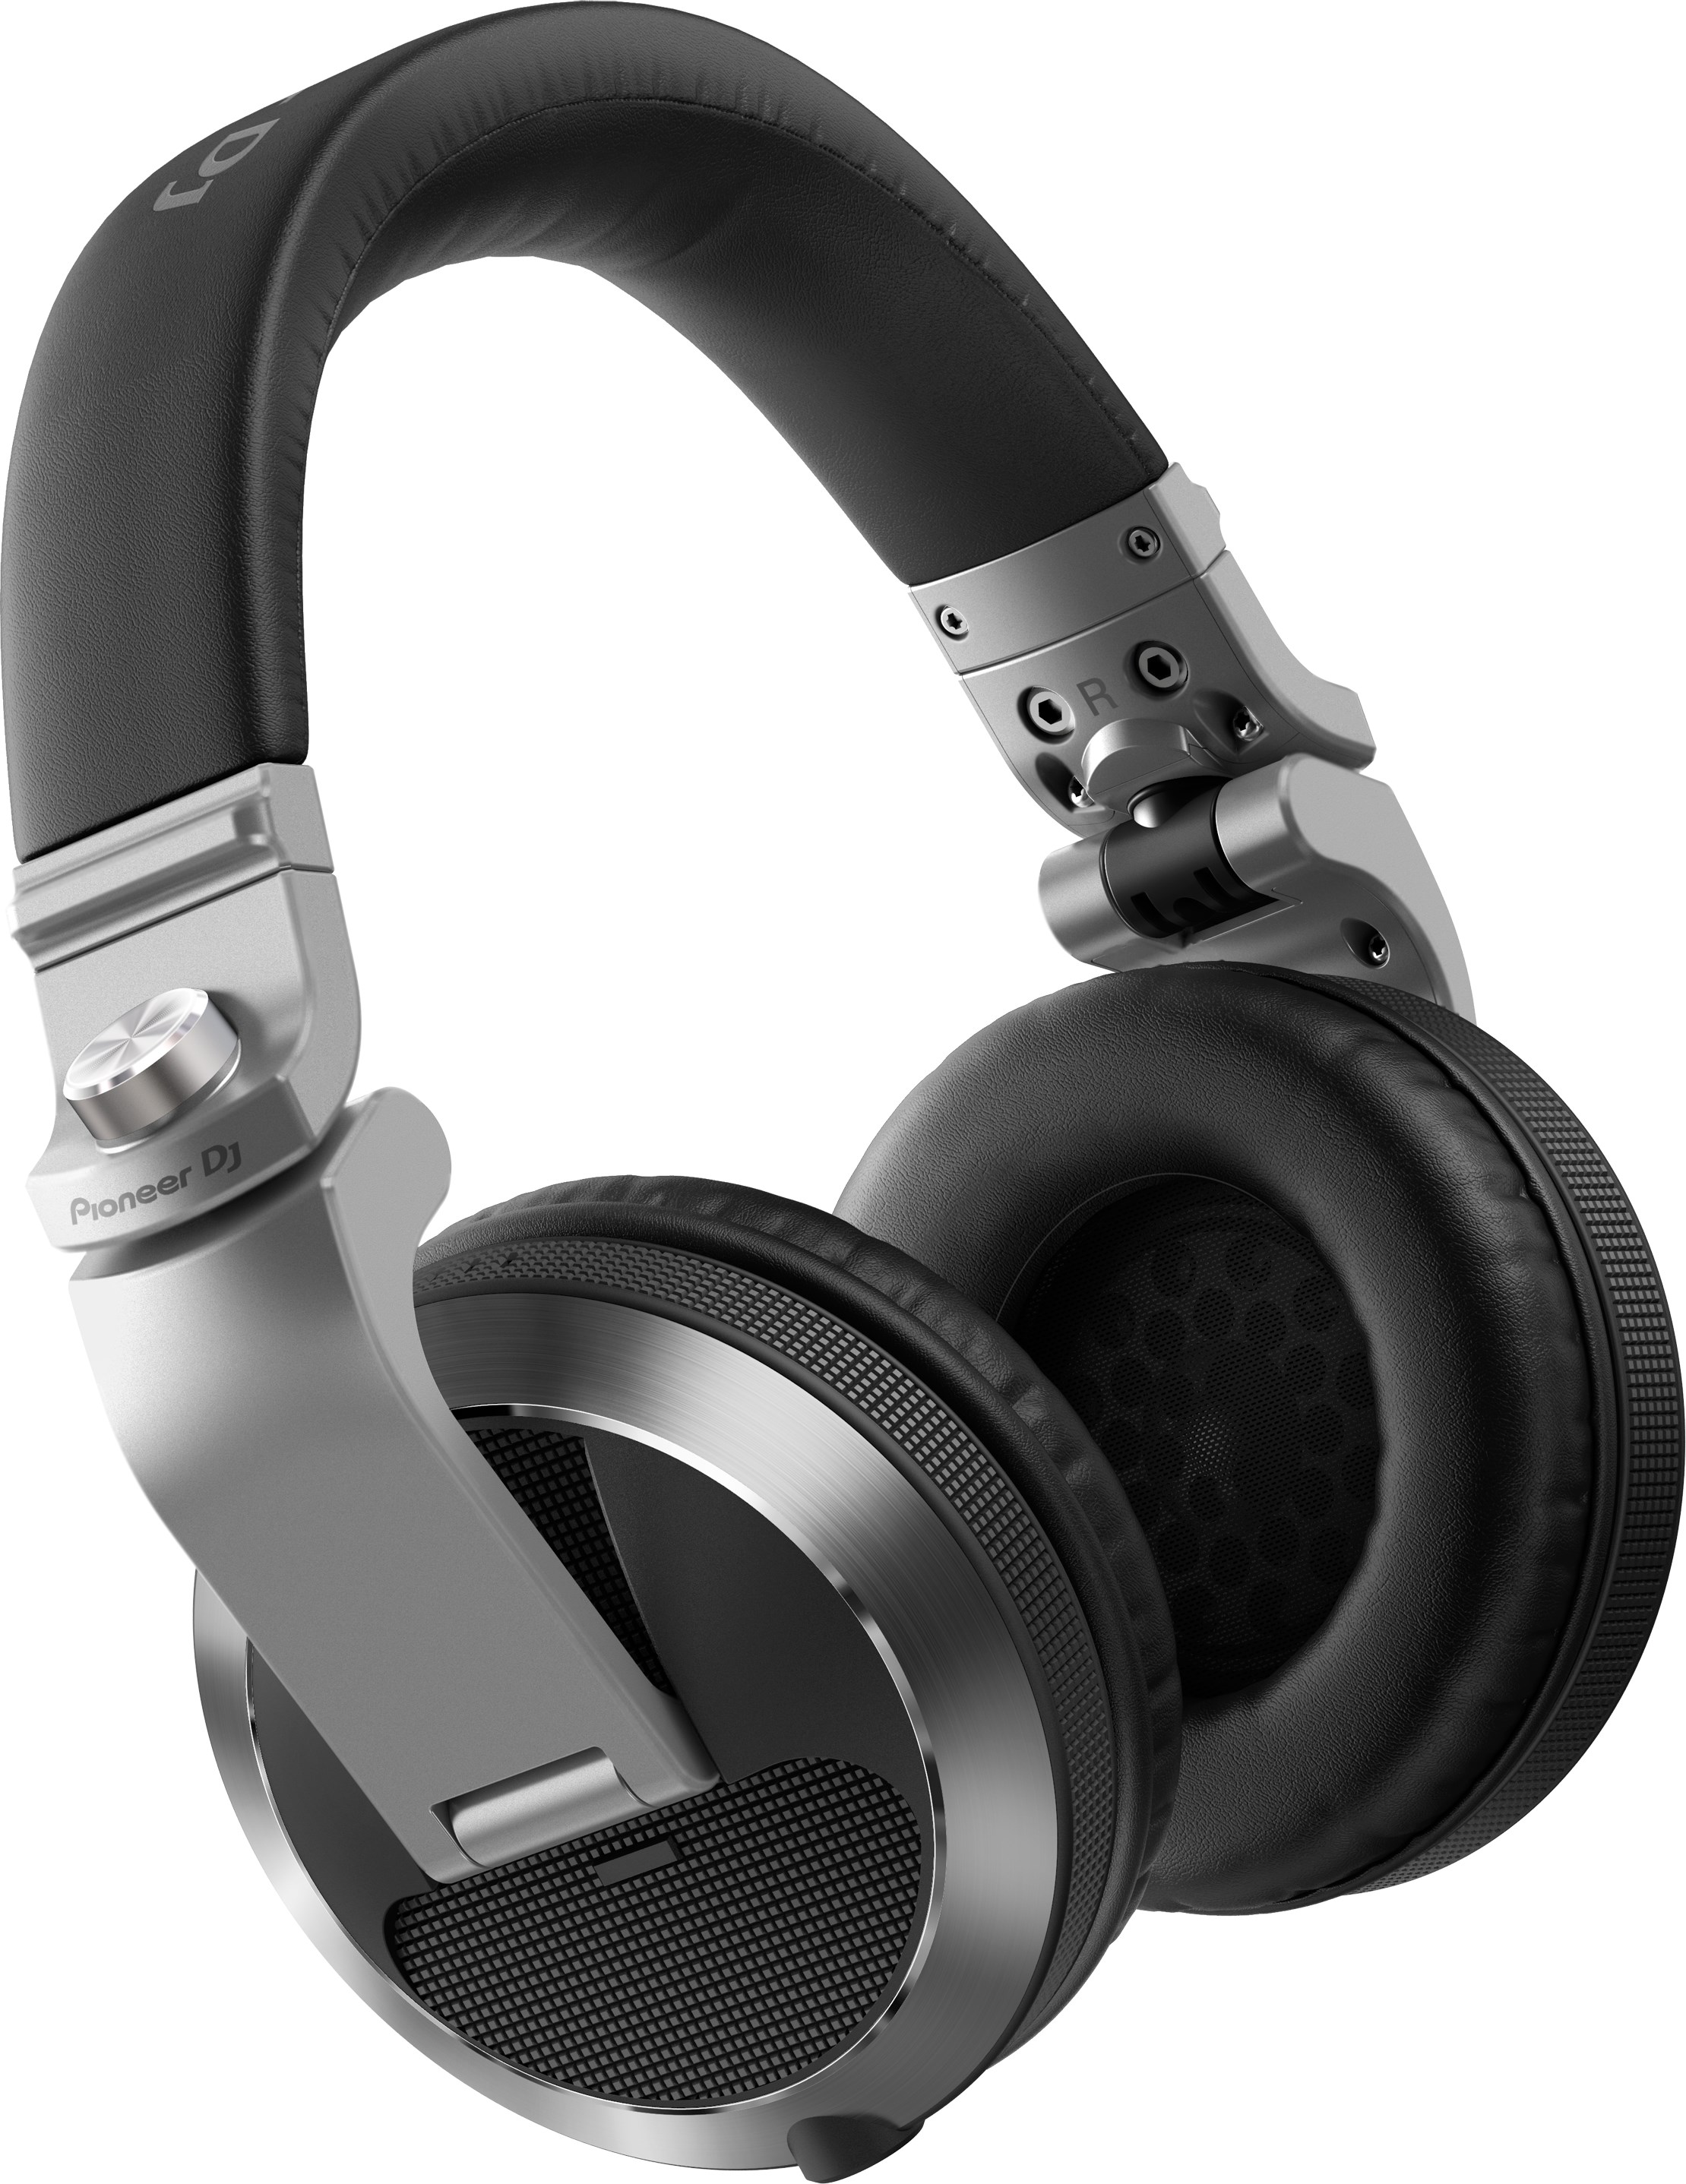 Tai nghe (Headphones) HDJ-X7-S (Pioneer DJ) - Hàng Chính Hãng